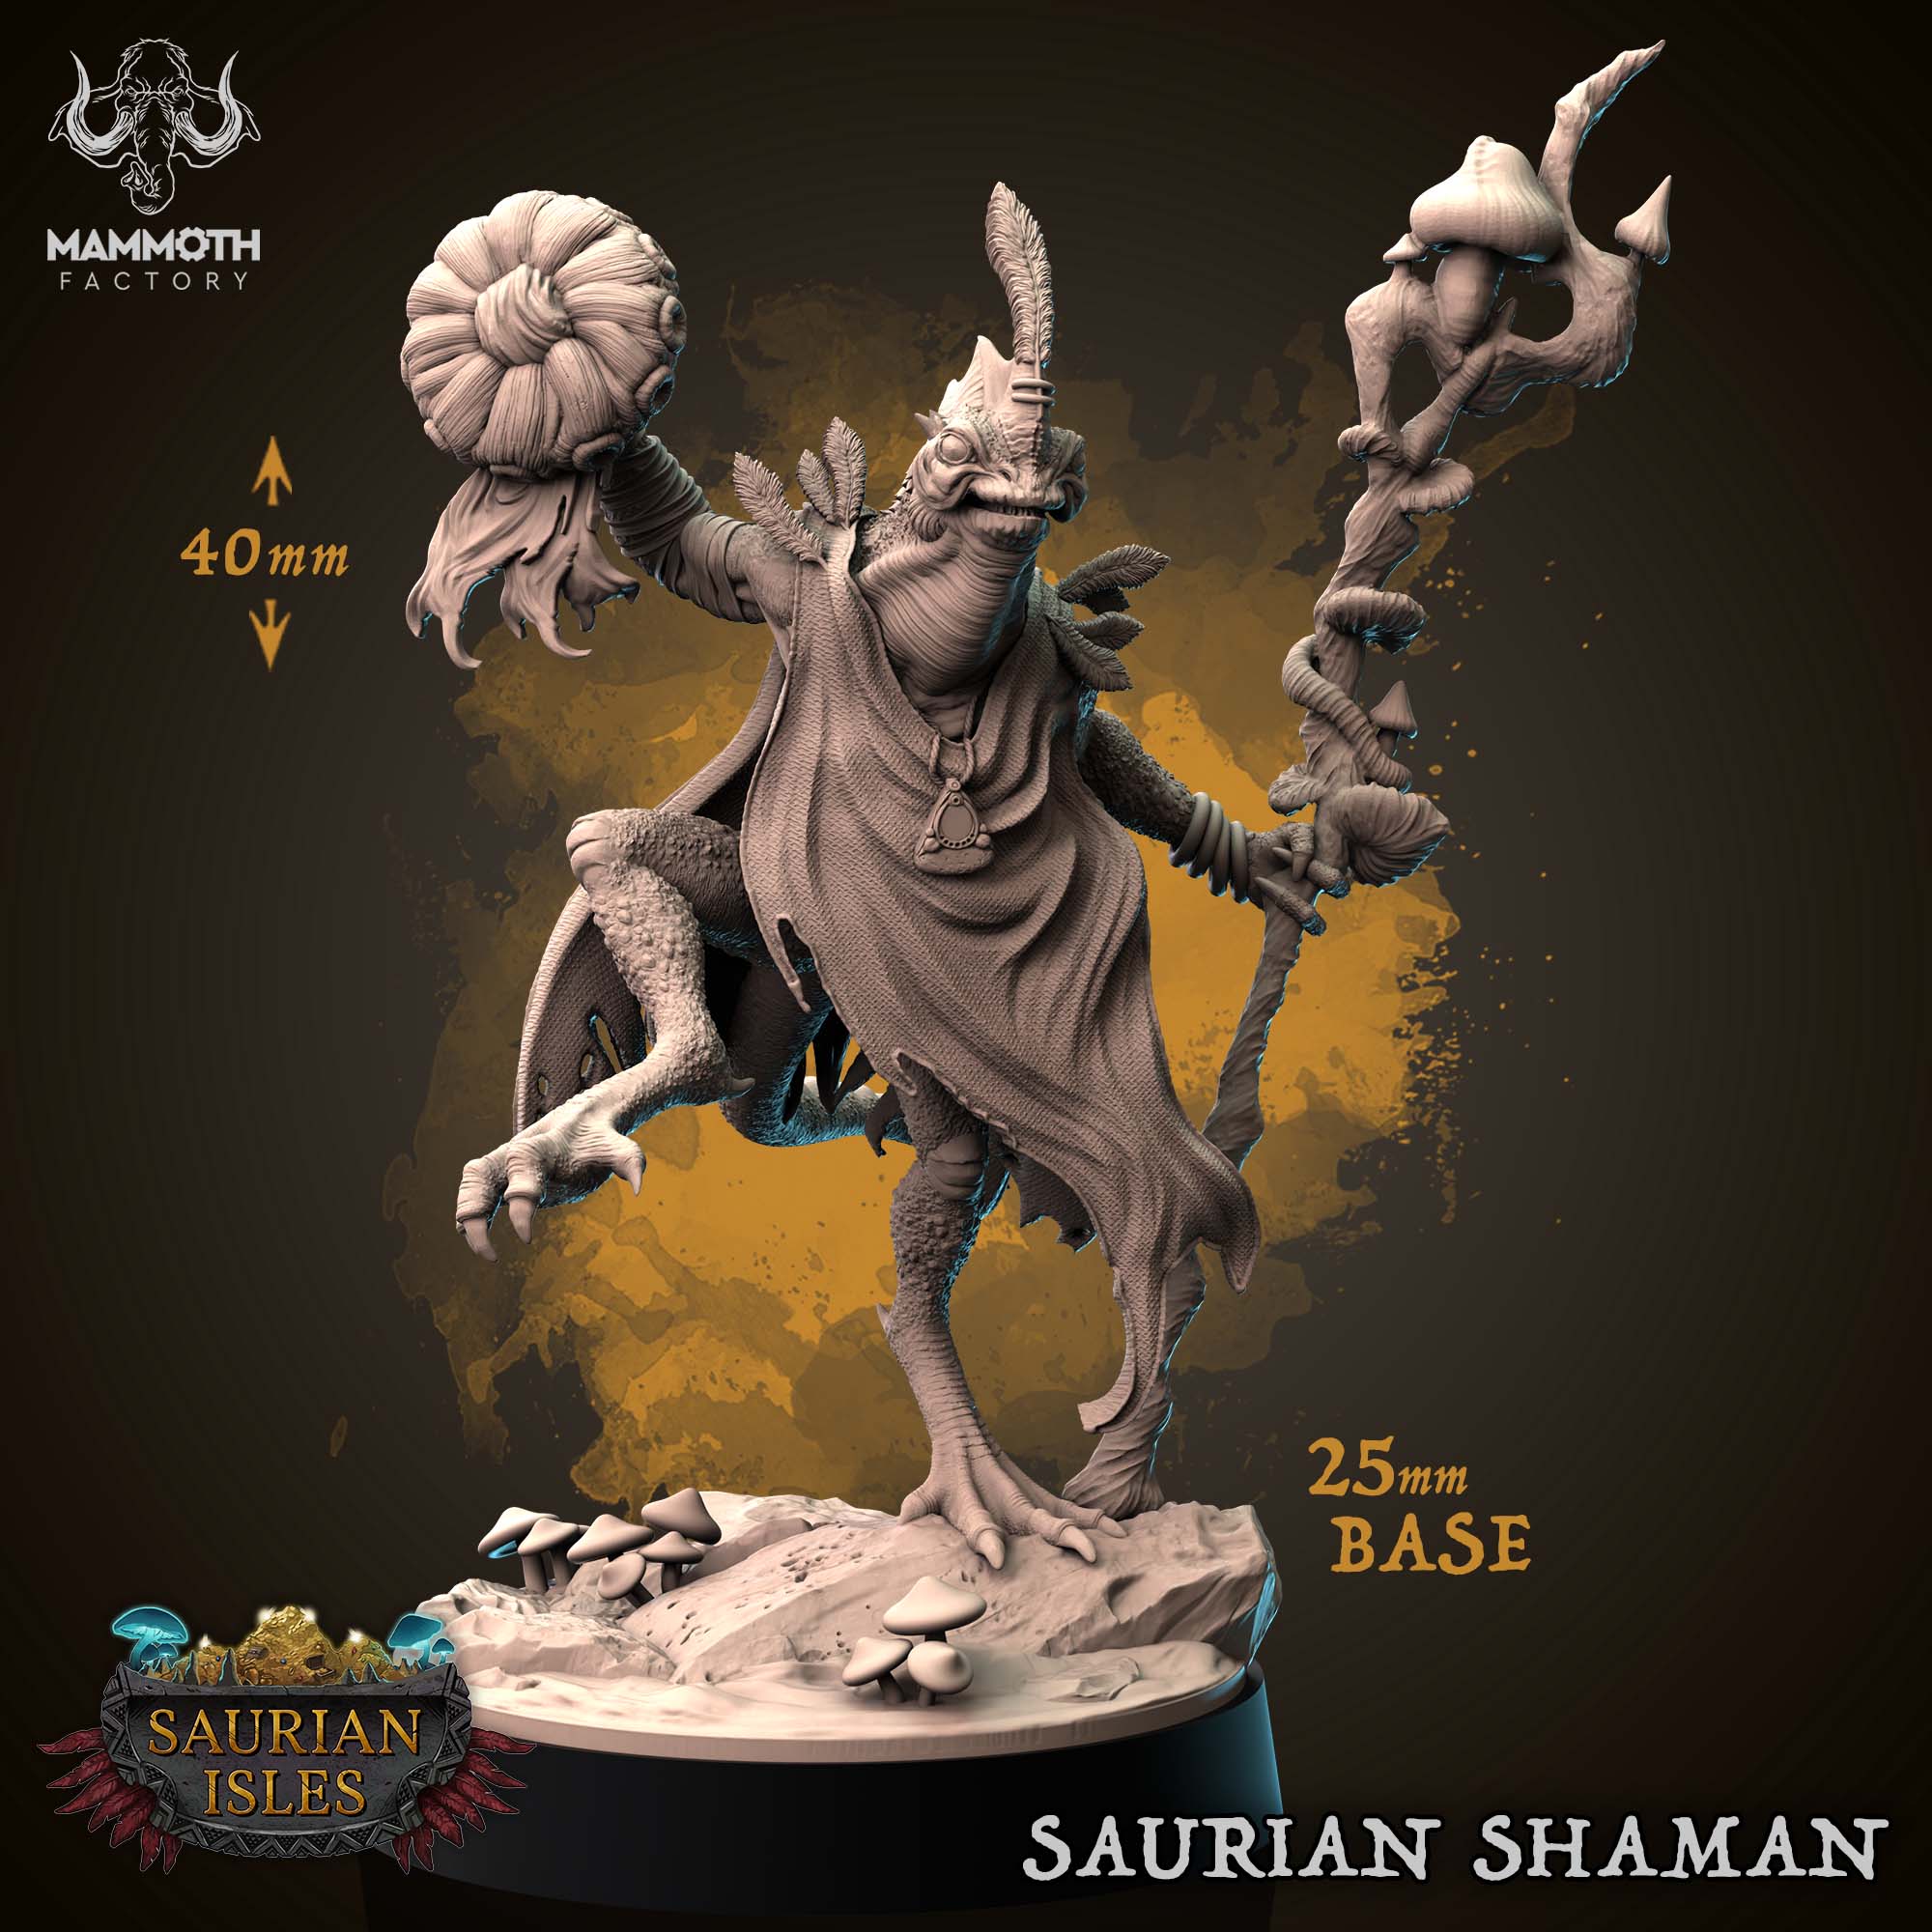 Saurian Shaman